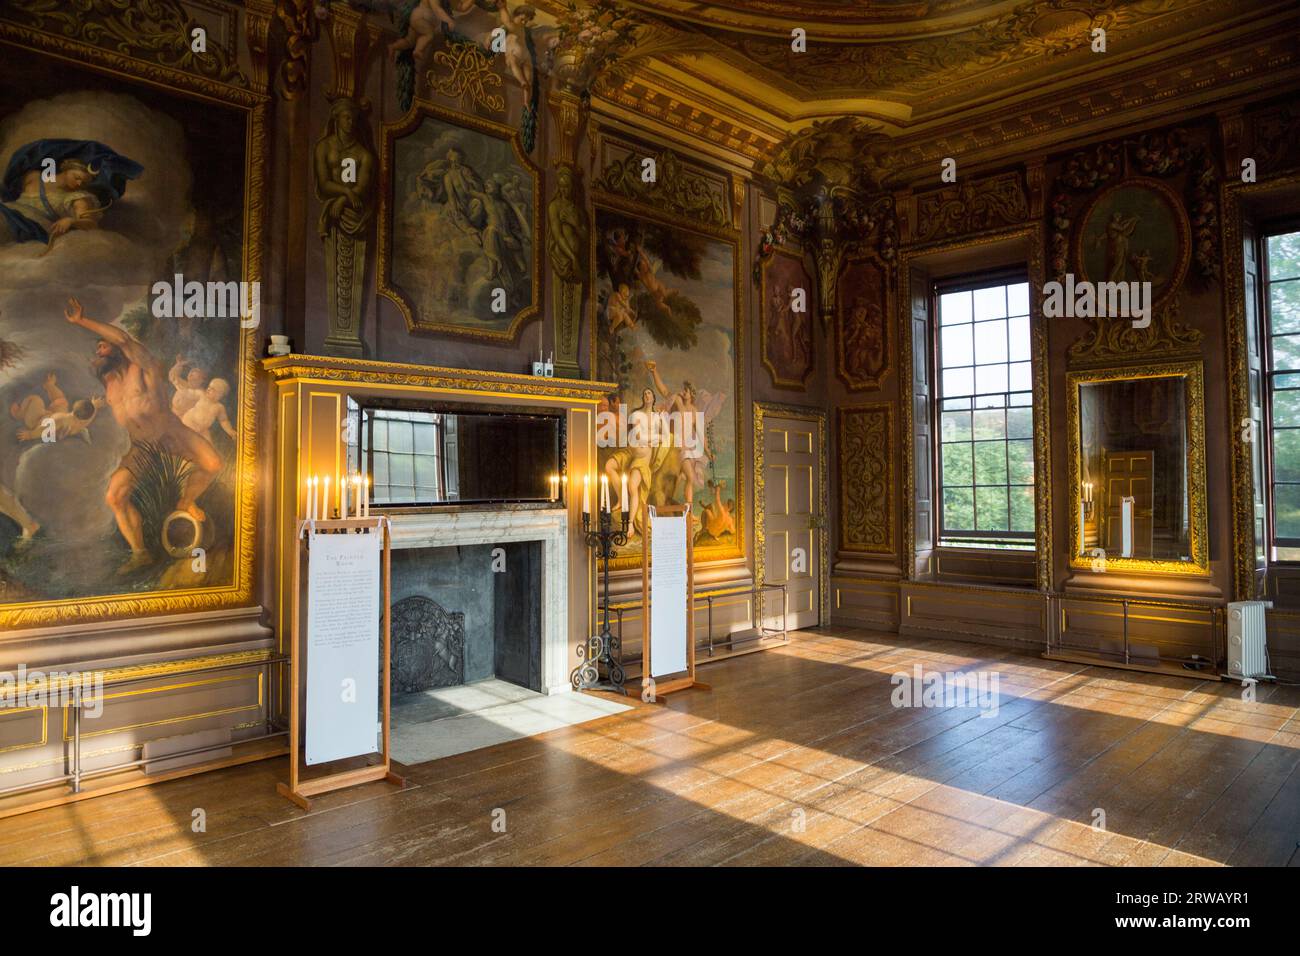 Interno della sala dipinta presso la Little Banqueting House, Hampton Court Palace, progettato dall'architetto William Talman per Guglielmo III, alias Re Guglielmo d'Orange. (135) Foto Stock